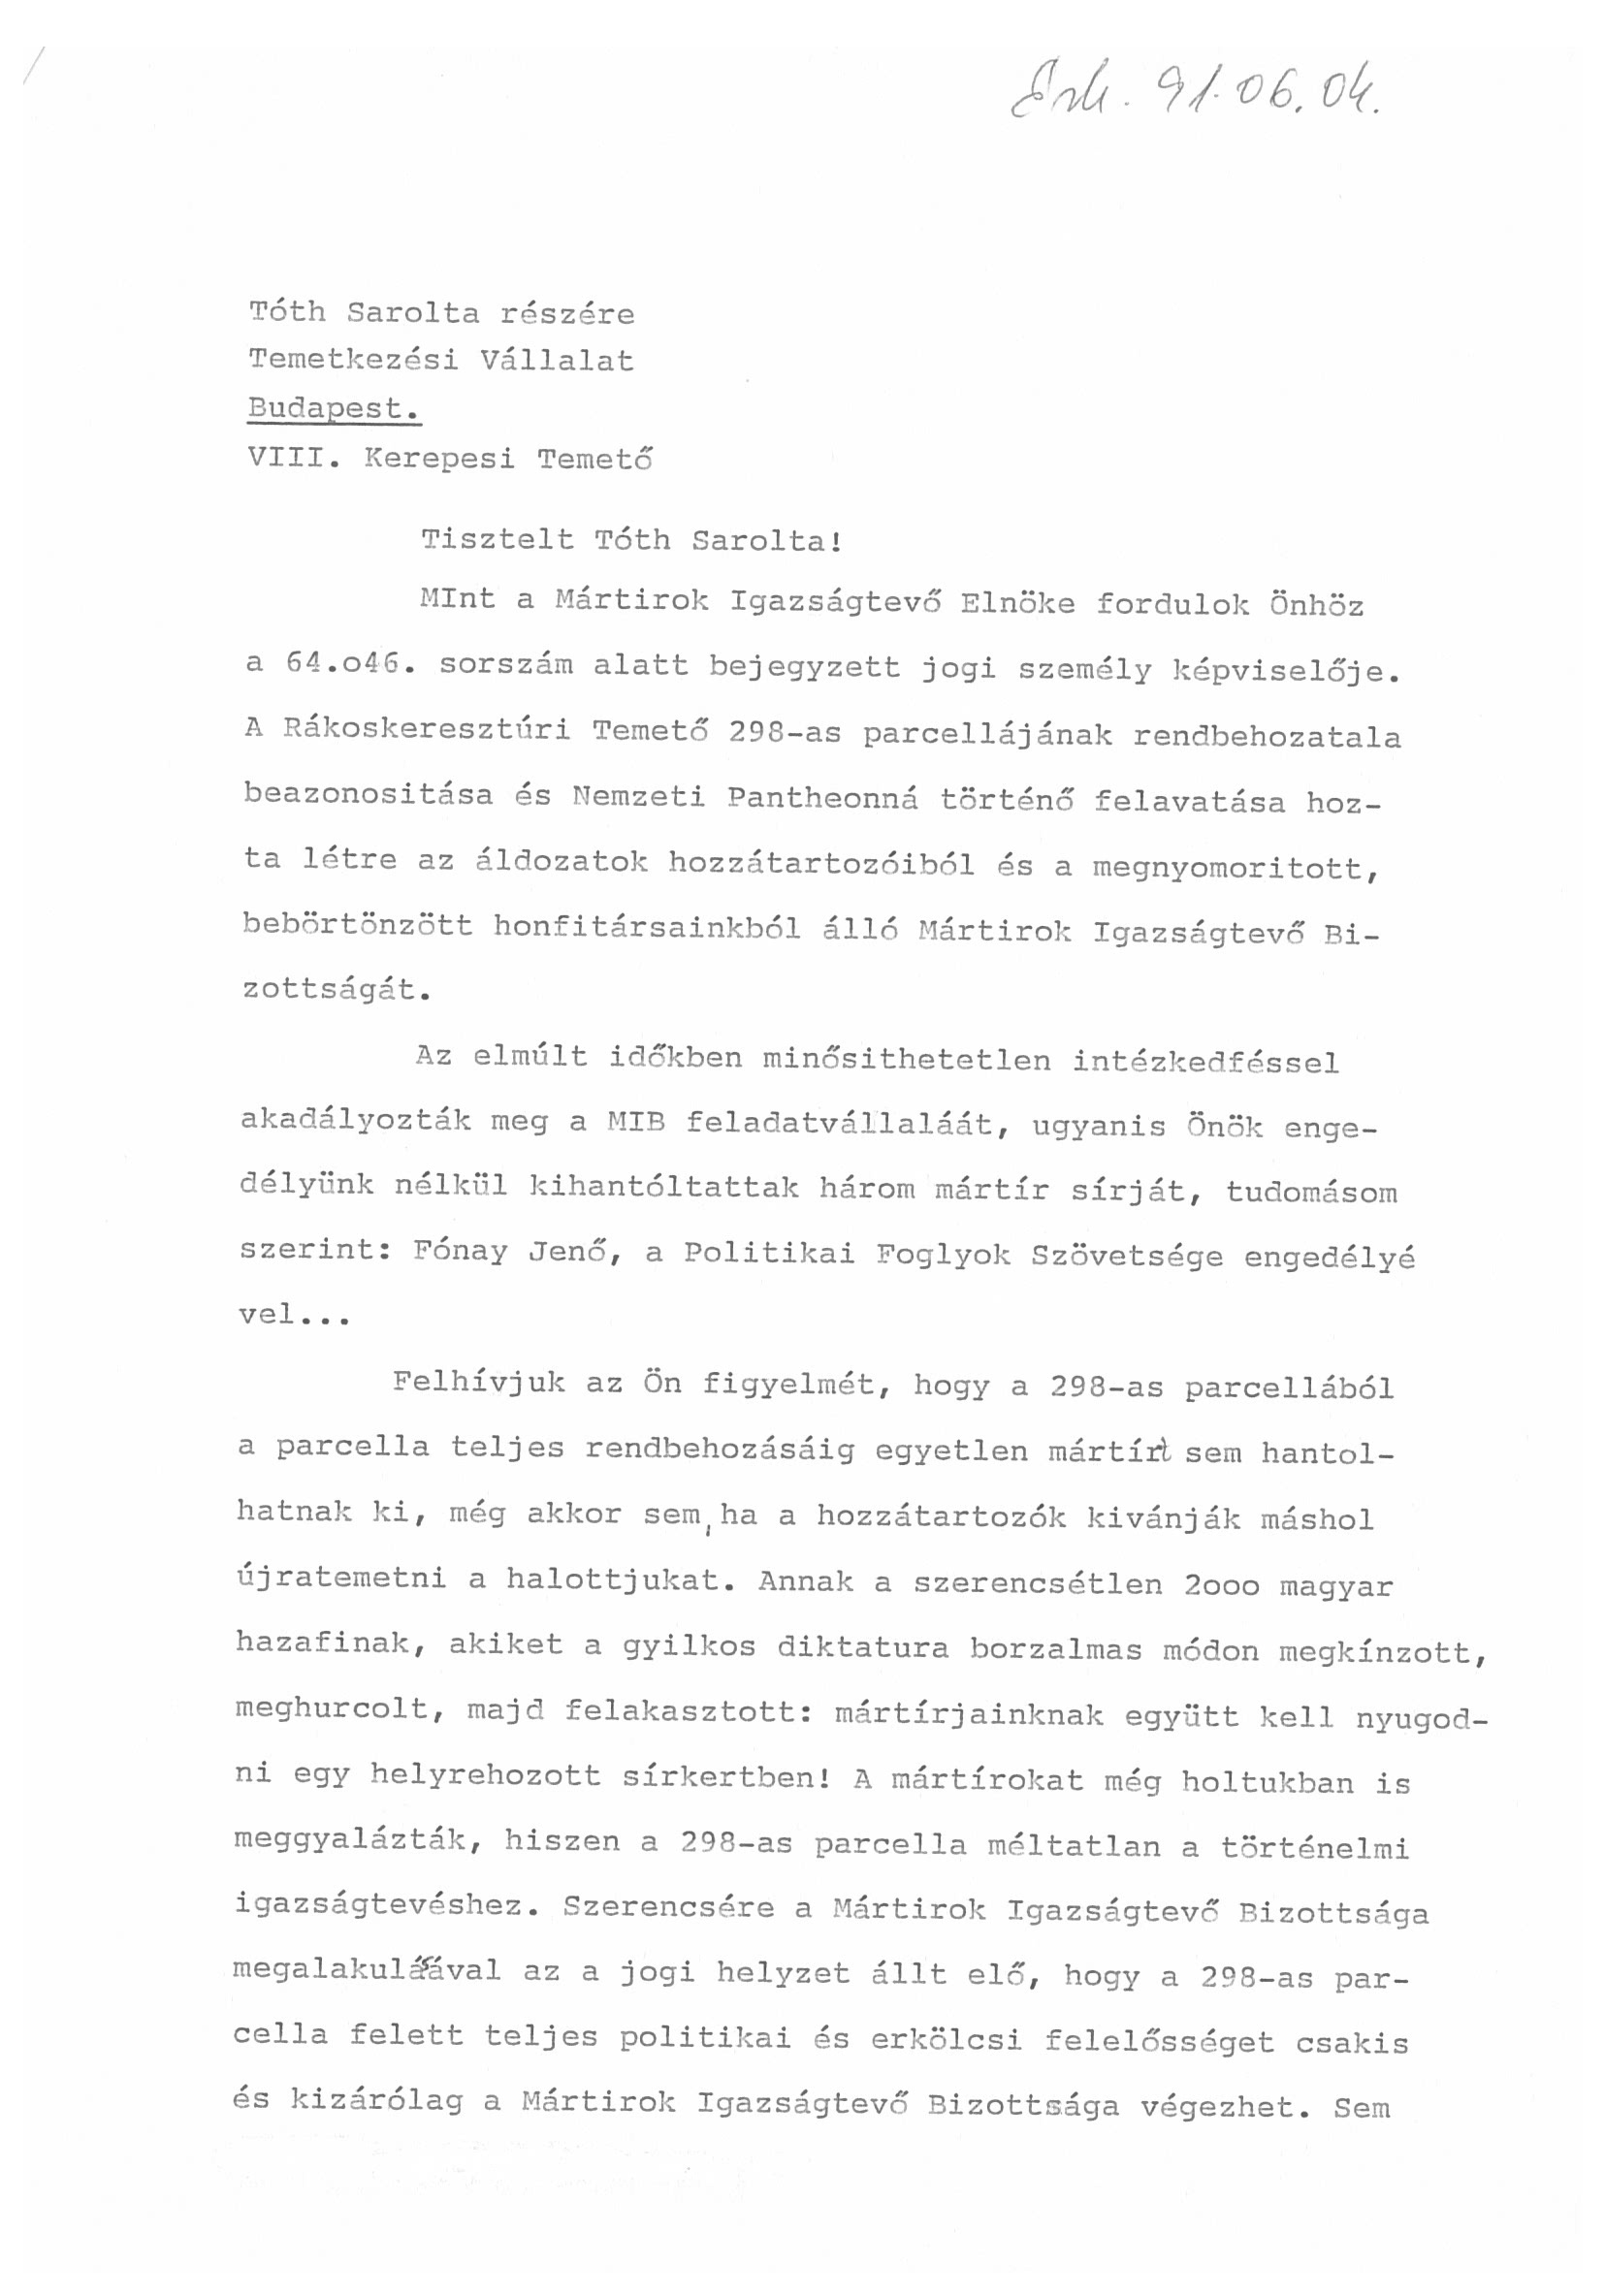 Mártírok Igazságtevő Bizottsága levele, 1991. június 3. (Nemzeti Örökség Intézete – Kegyeleti Múzeum CC BY-NC-SA)